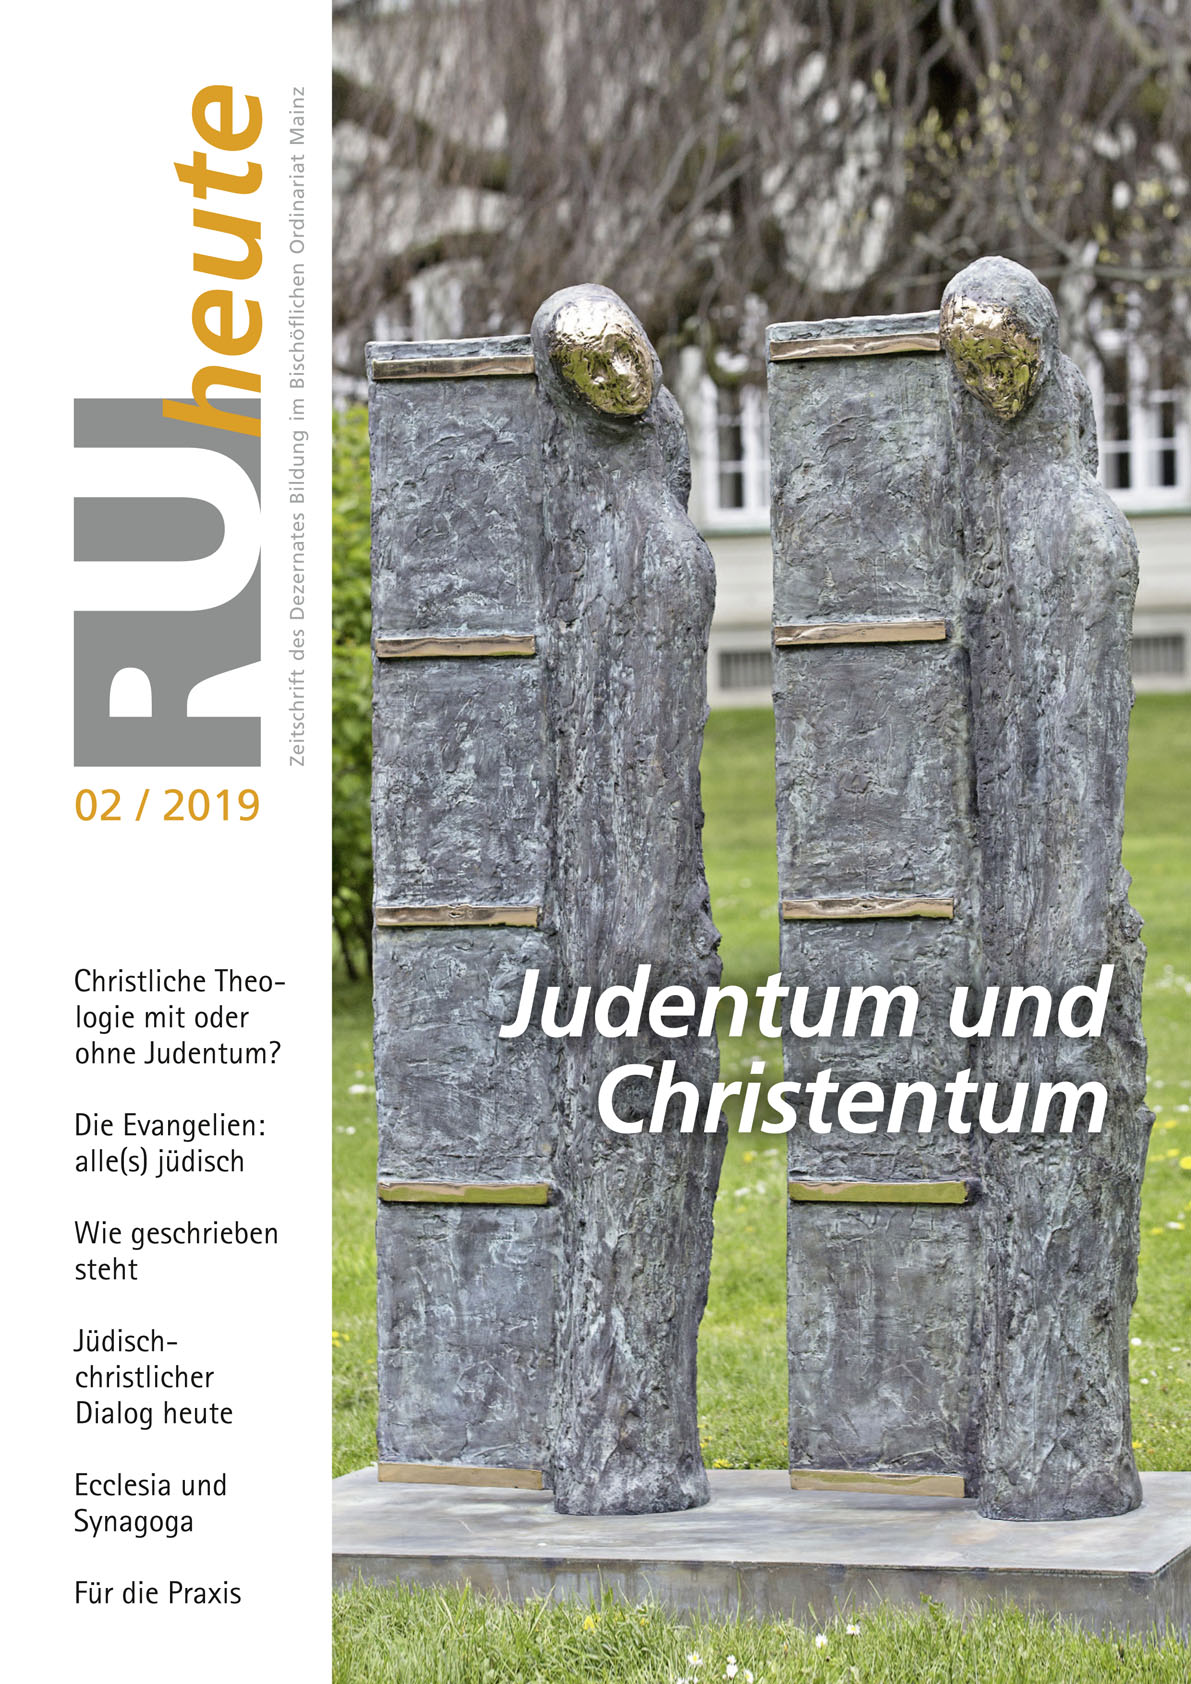 RU-heute-02-2019 (c) Bistum Mainz